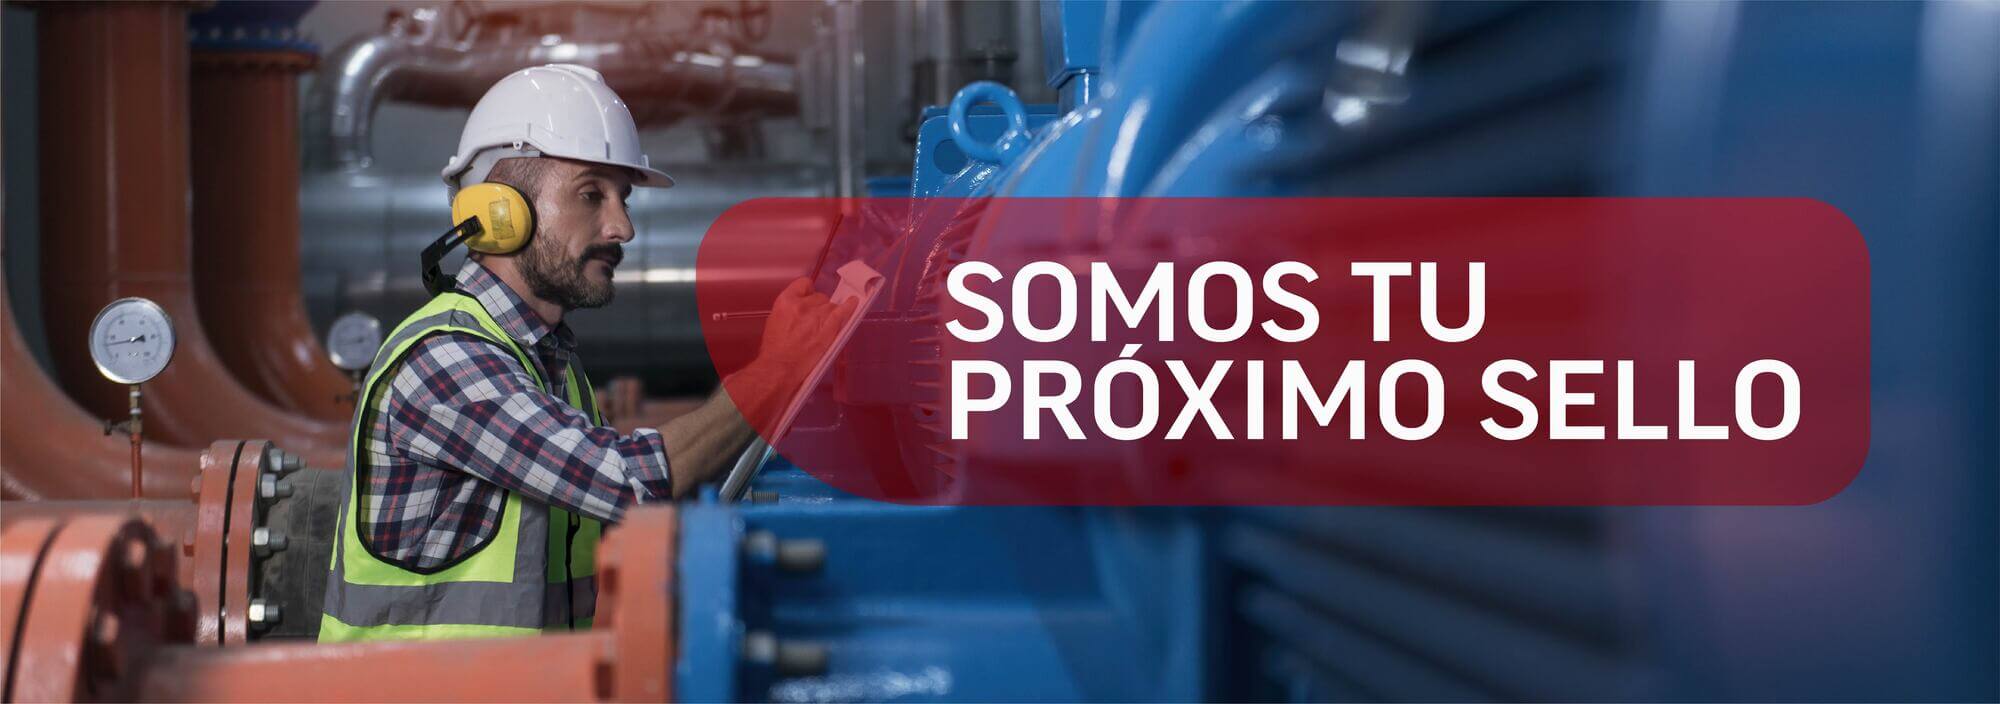 SOMOS-01